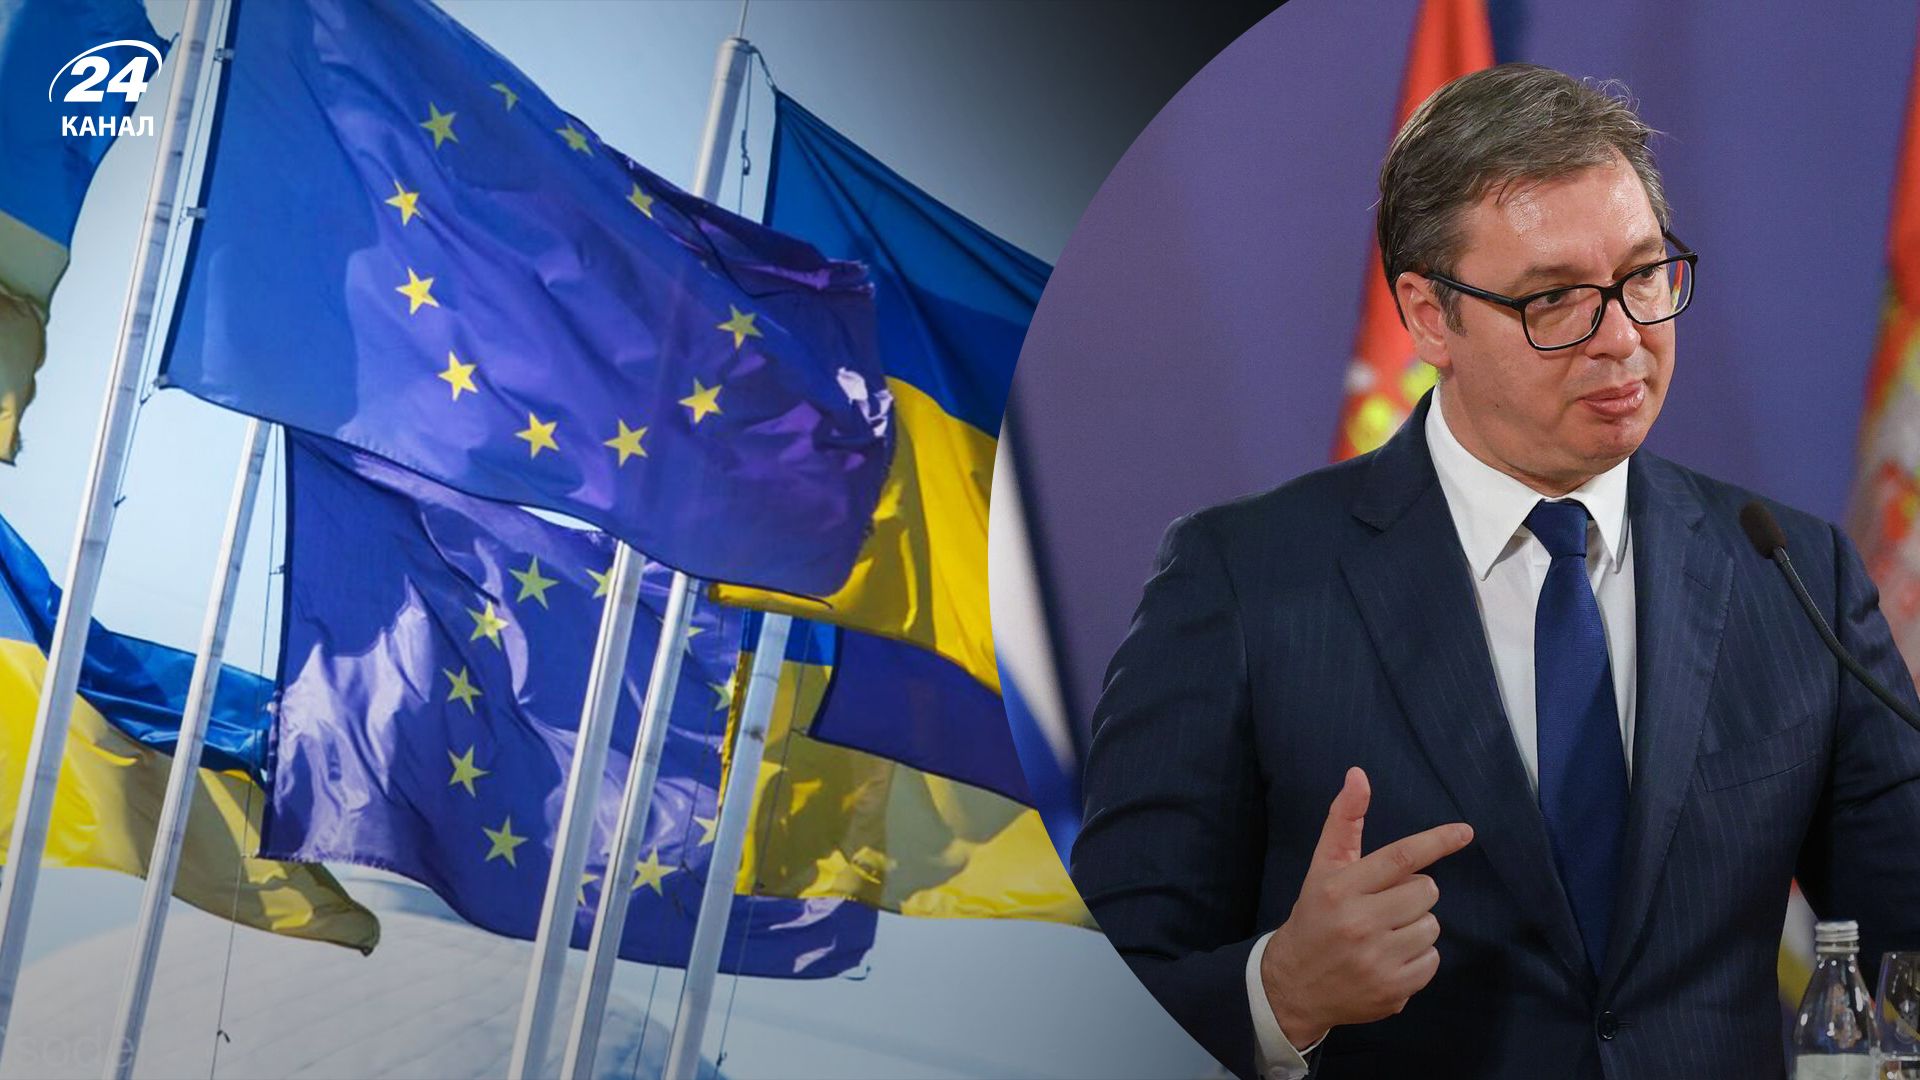 Сербия обиделась на Европу - Вучич заявил, что Украина получает очень много поддержки - 24 Канал